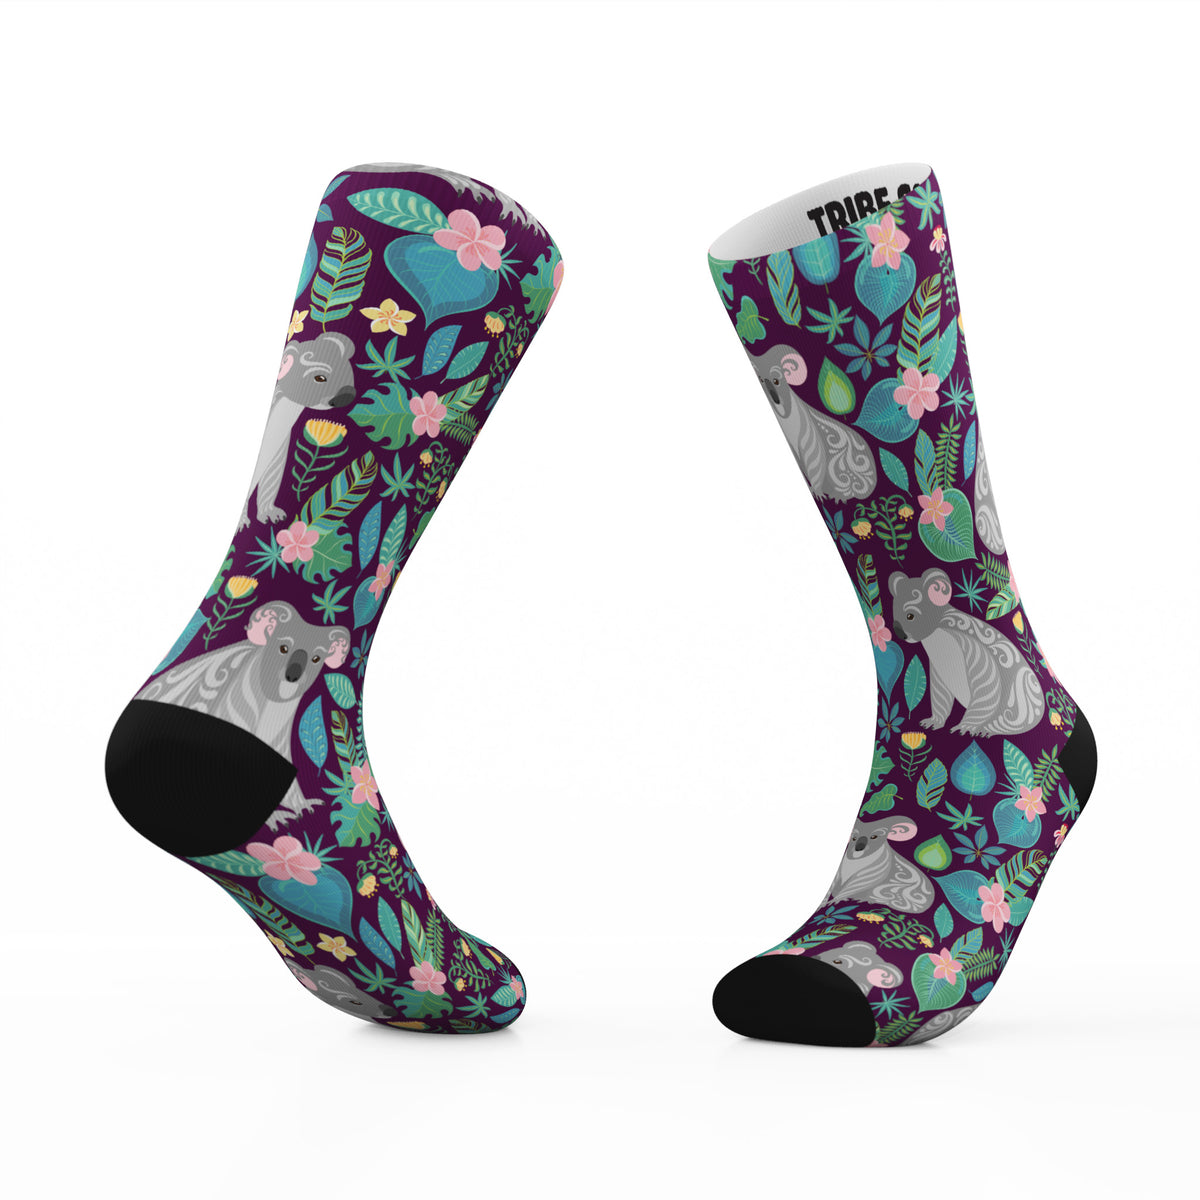 Tribe Socks | Tribe Socks makes premium custom printed socks